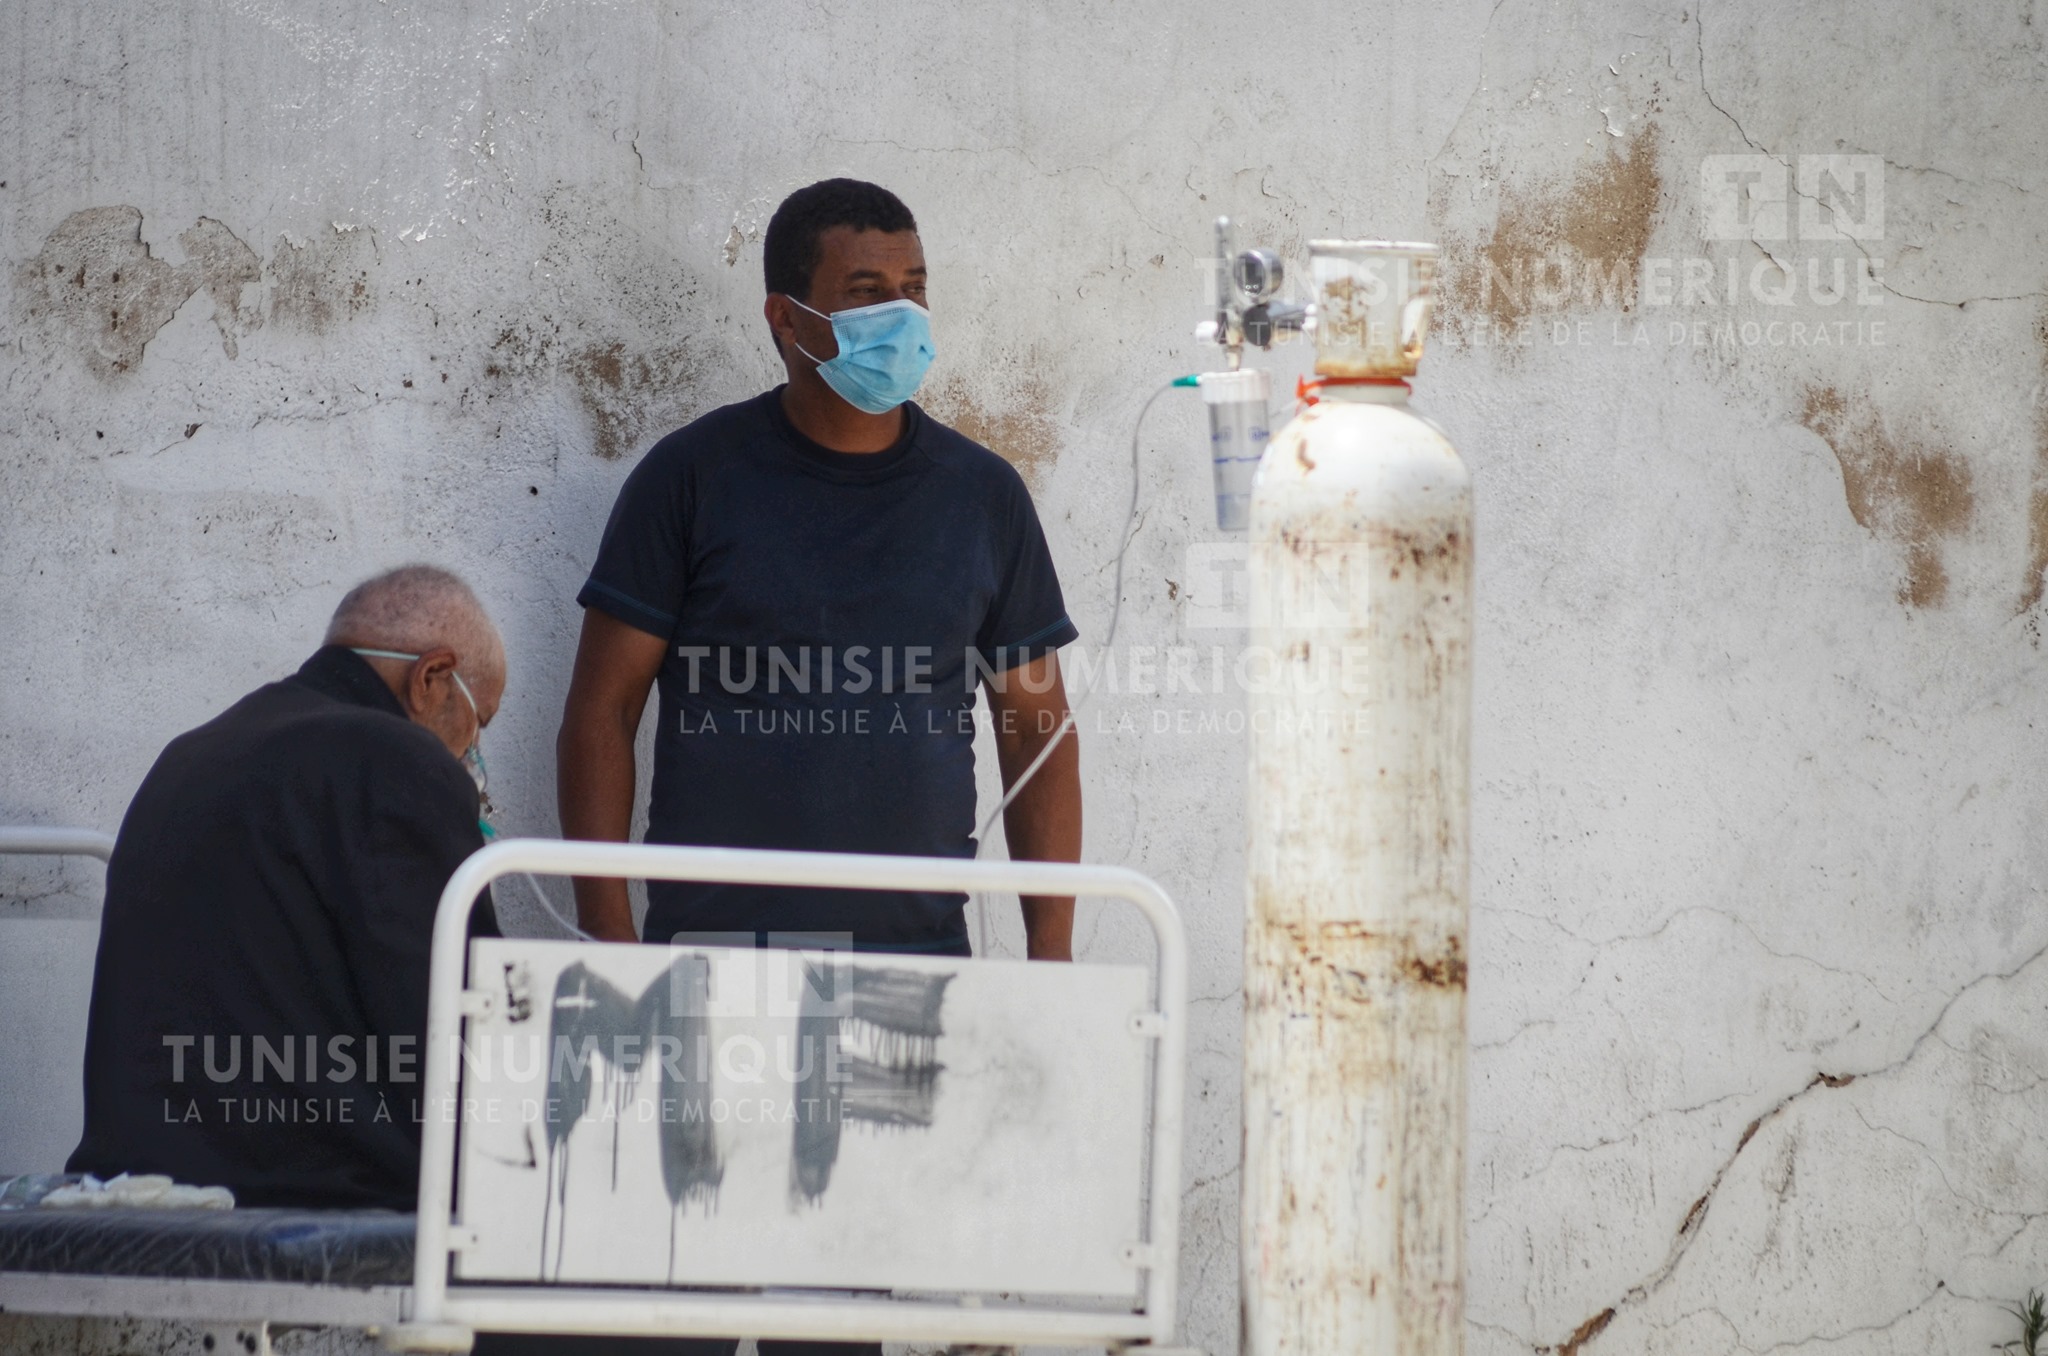 Tunisie-Situation sanitaire critique: Faouzi Added craint un scénario à l’indienne